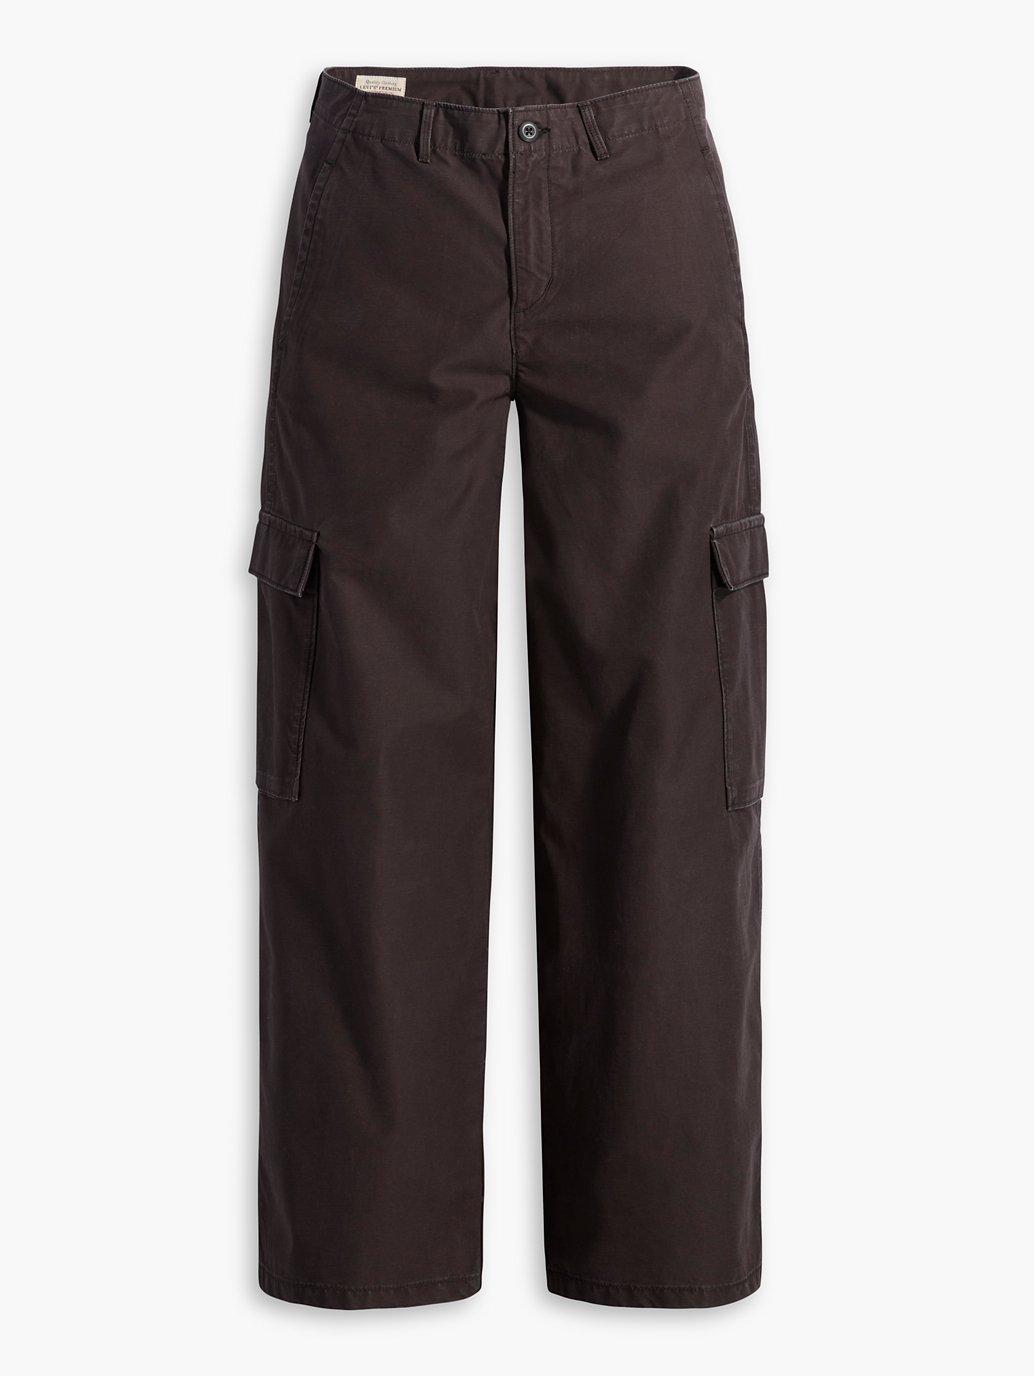 Buy Levi's® Women's Baggy Cargo Pants | Levi’s Official Online Store SG